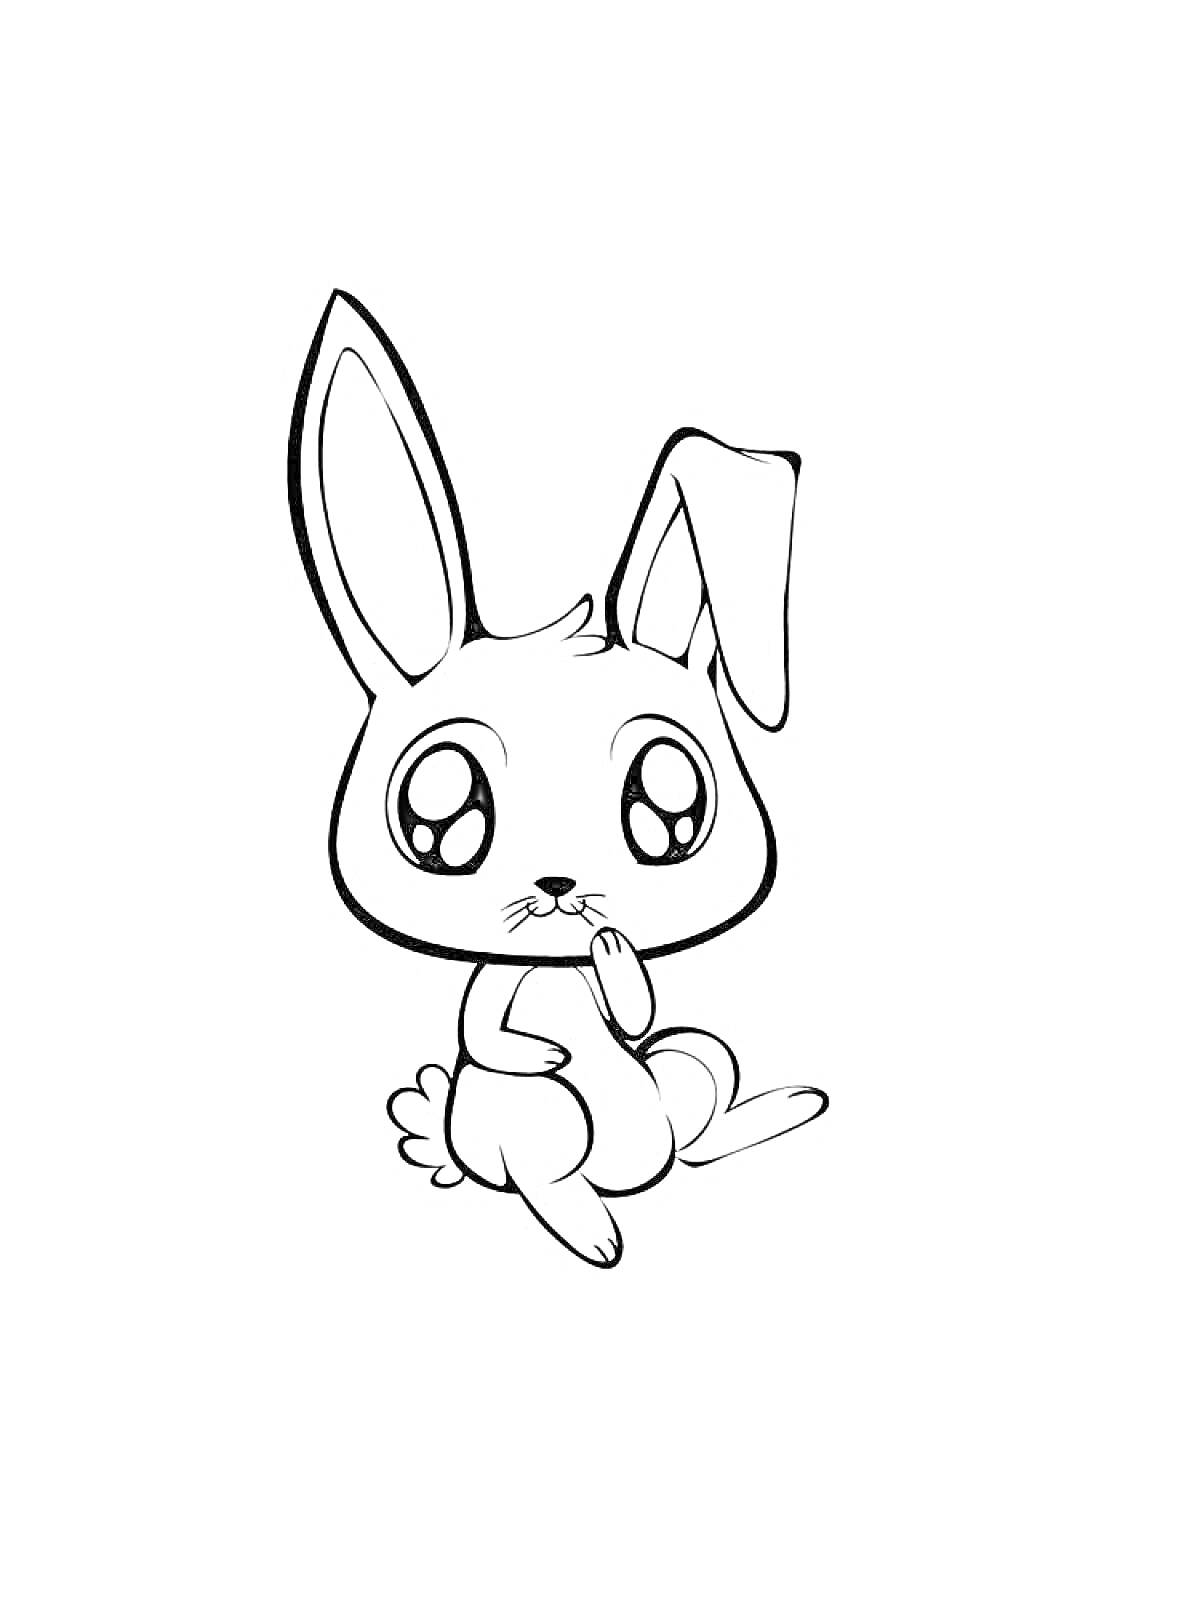 Раскраска Аниме кролик сидит и держит лапку у рта